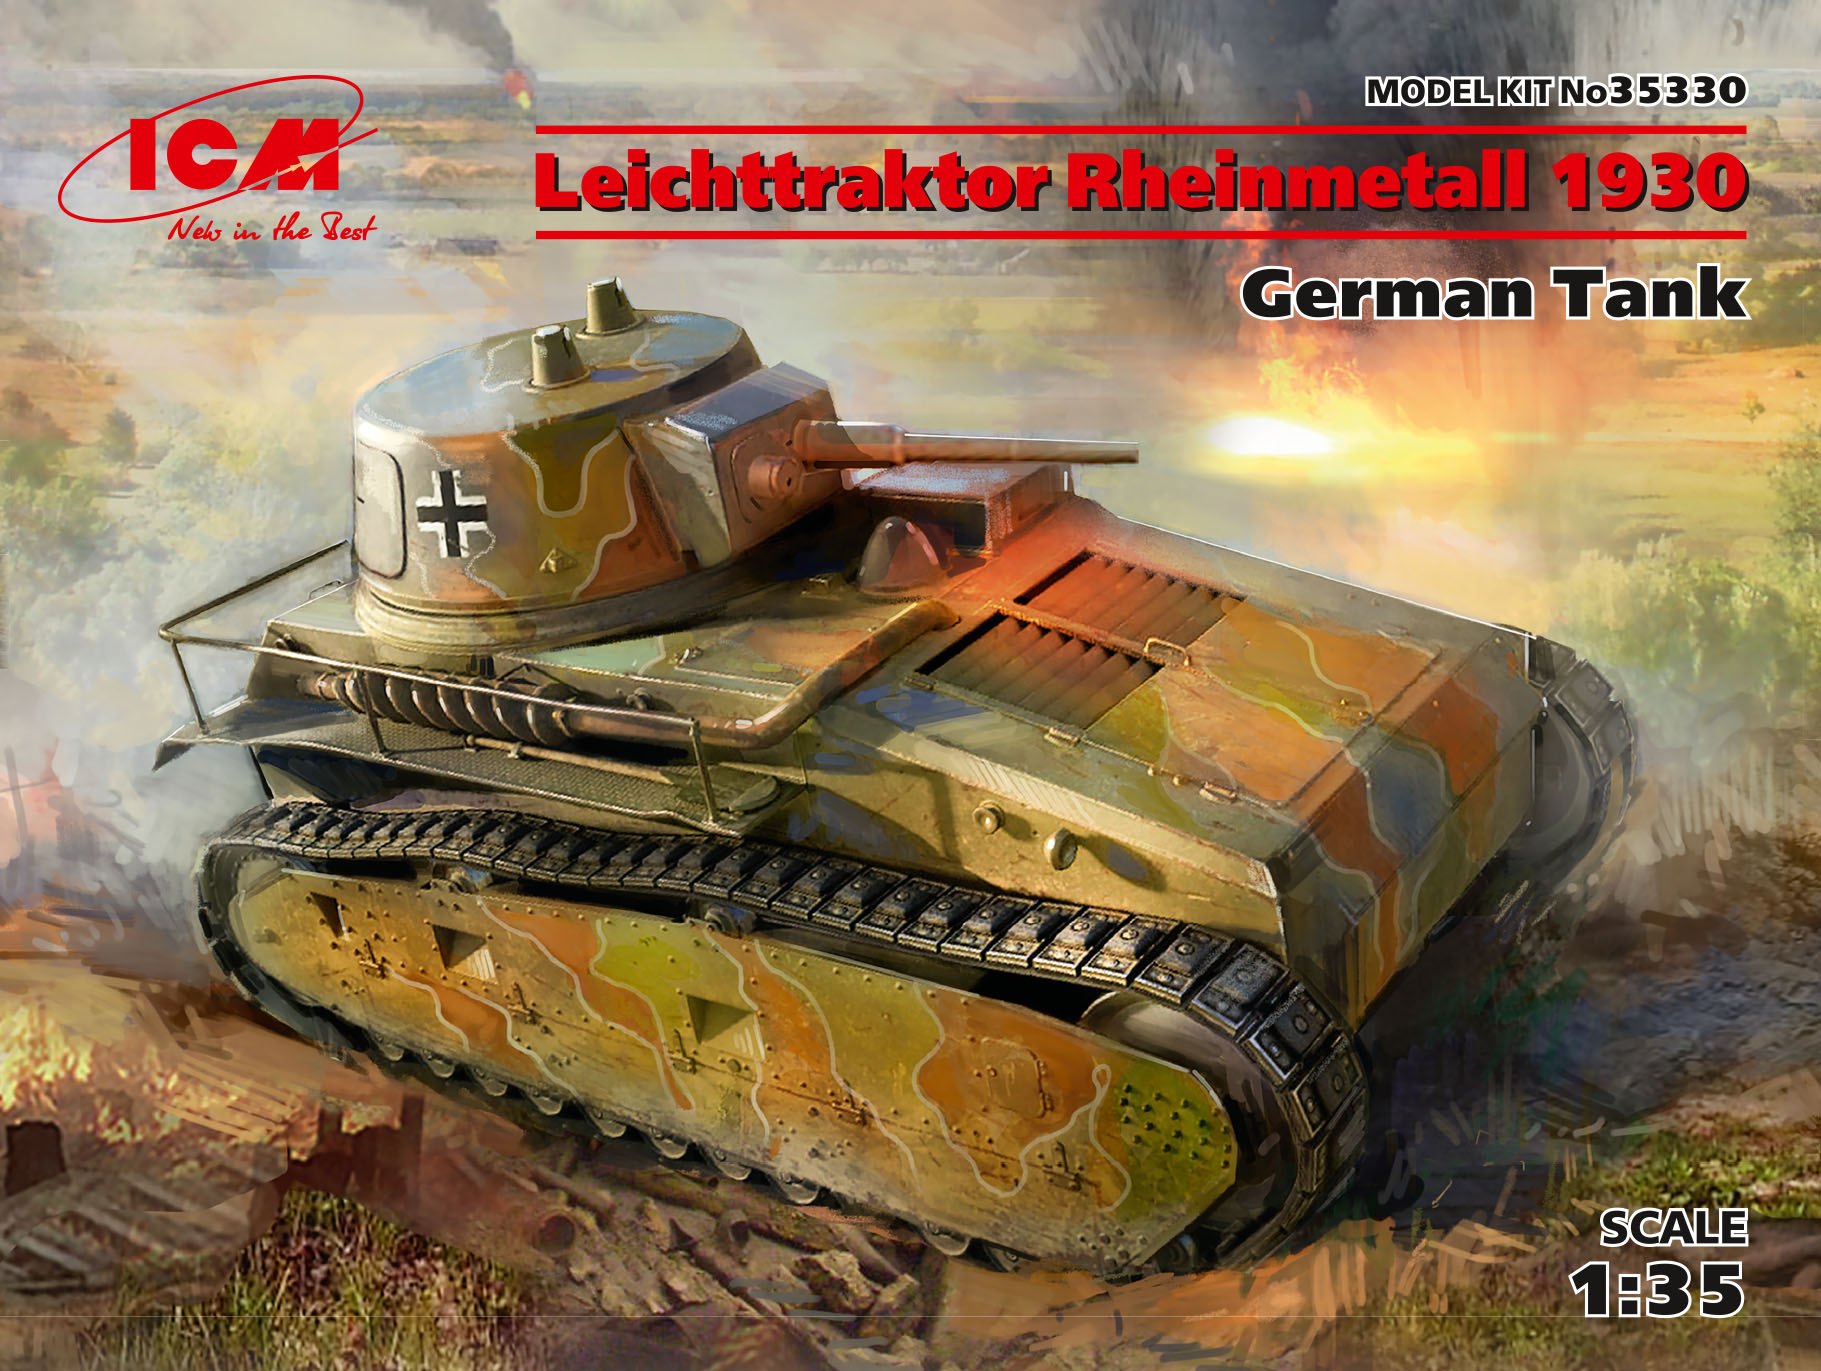 1/35　ドイツ軽戦車 ライヒトトラクトーア ラインメタル (VK31) 1930